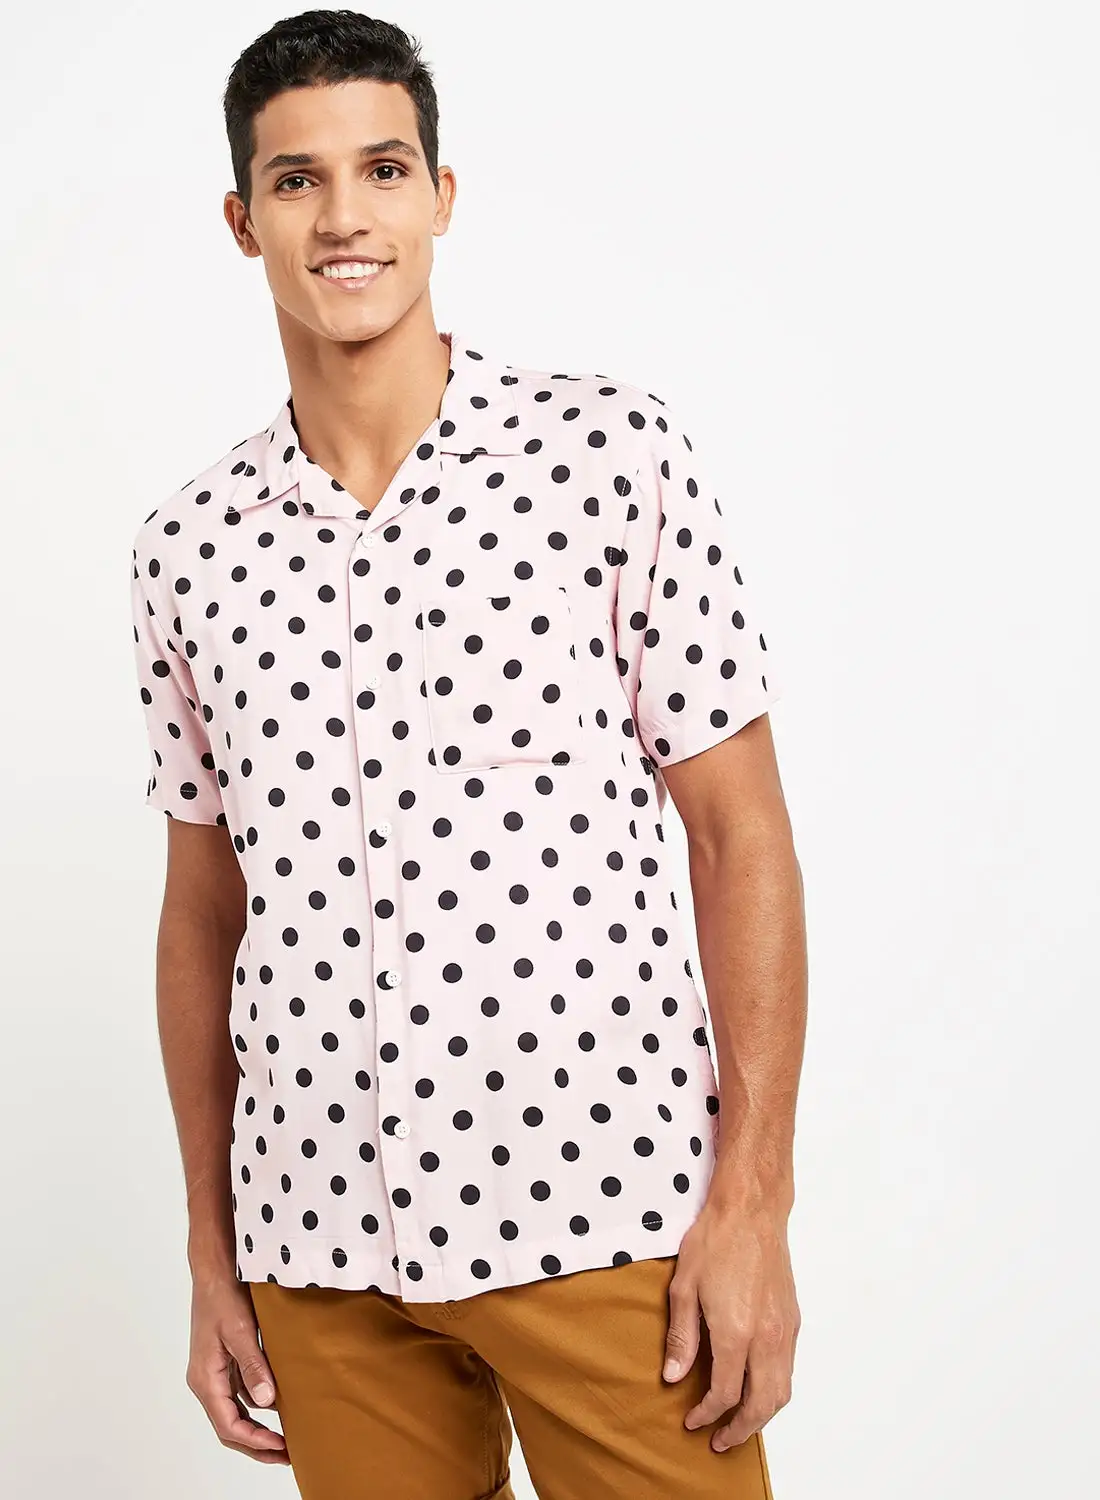 DSTRUCT Polka Dots Print Short Sleeves Shirt Pink